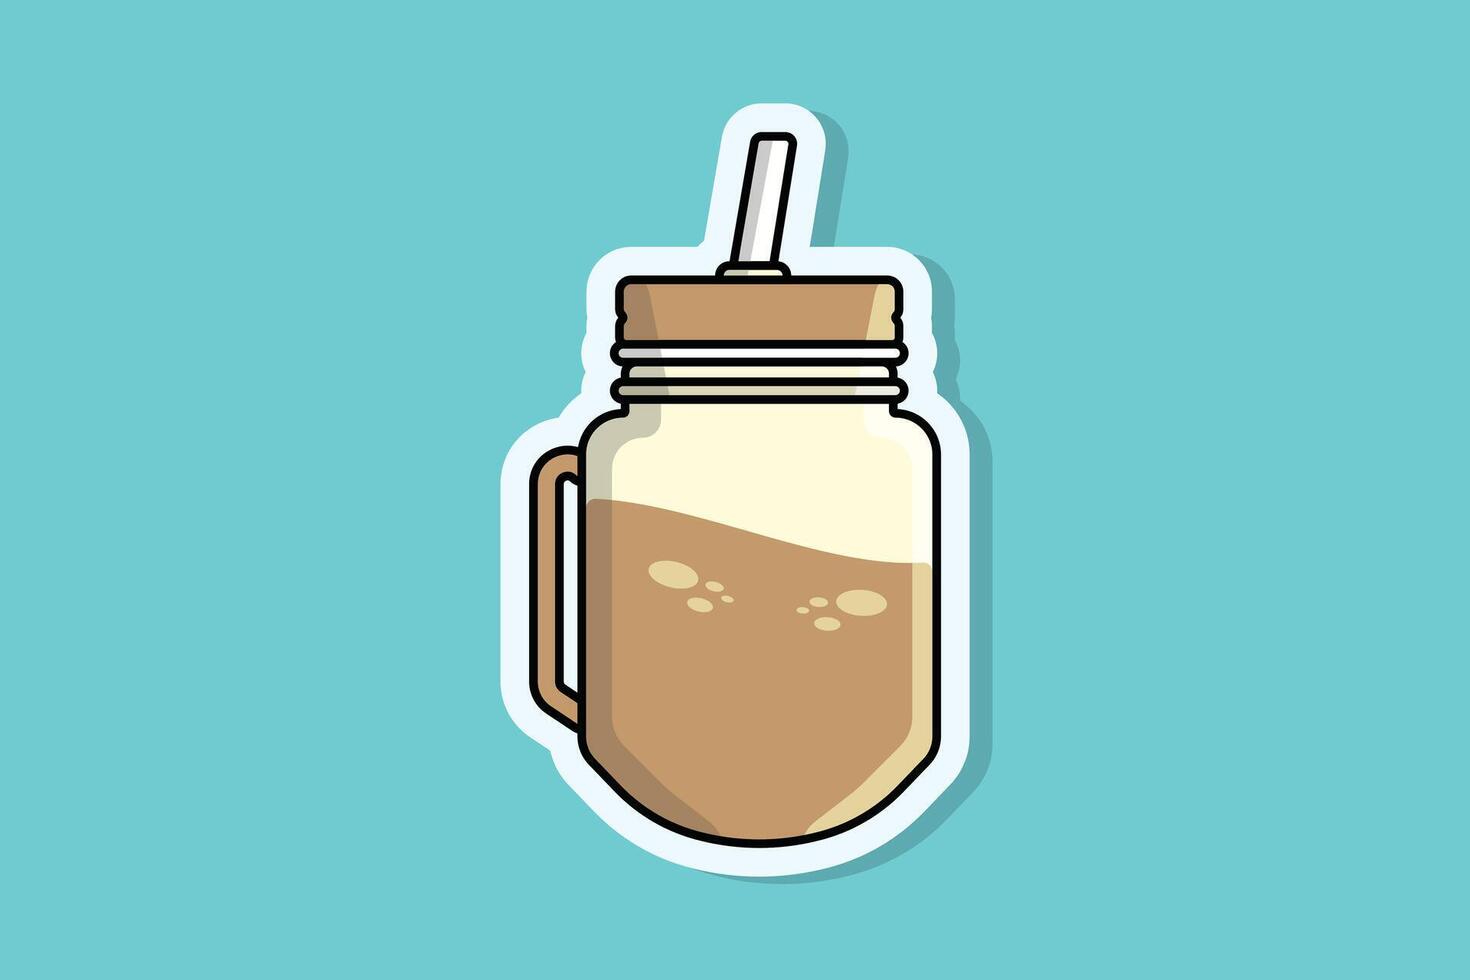 chocola sap in pot mok met drinken rietje sticker vector illustratie. voedsel en drinken voorwerp icoon concept. gezond geschiktheid zoet biologisch zomer schudden sticker ontwerp logo.